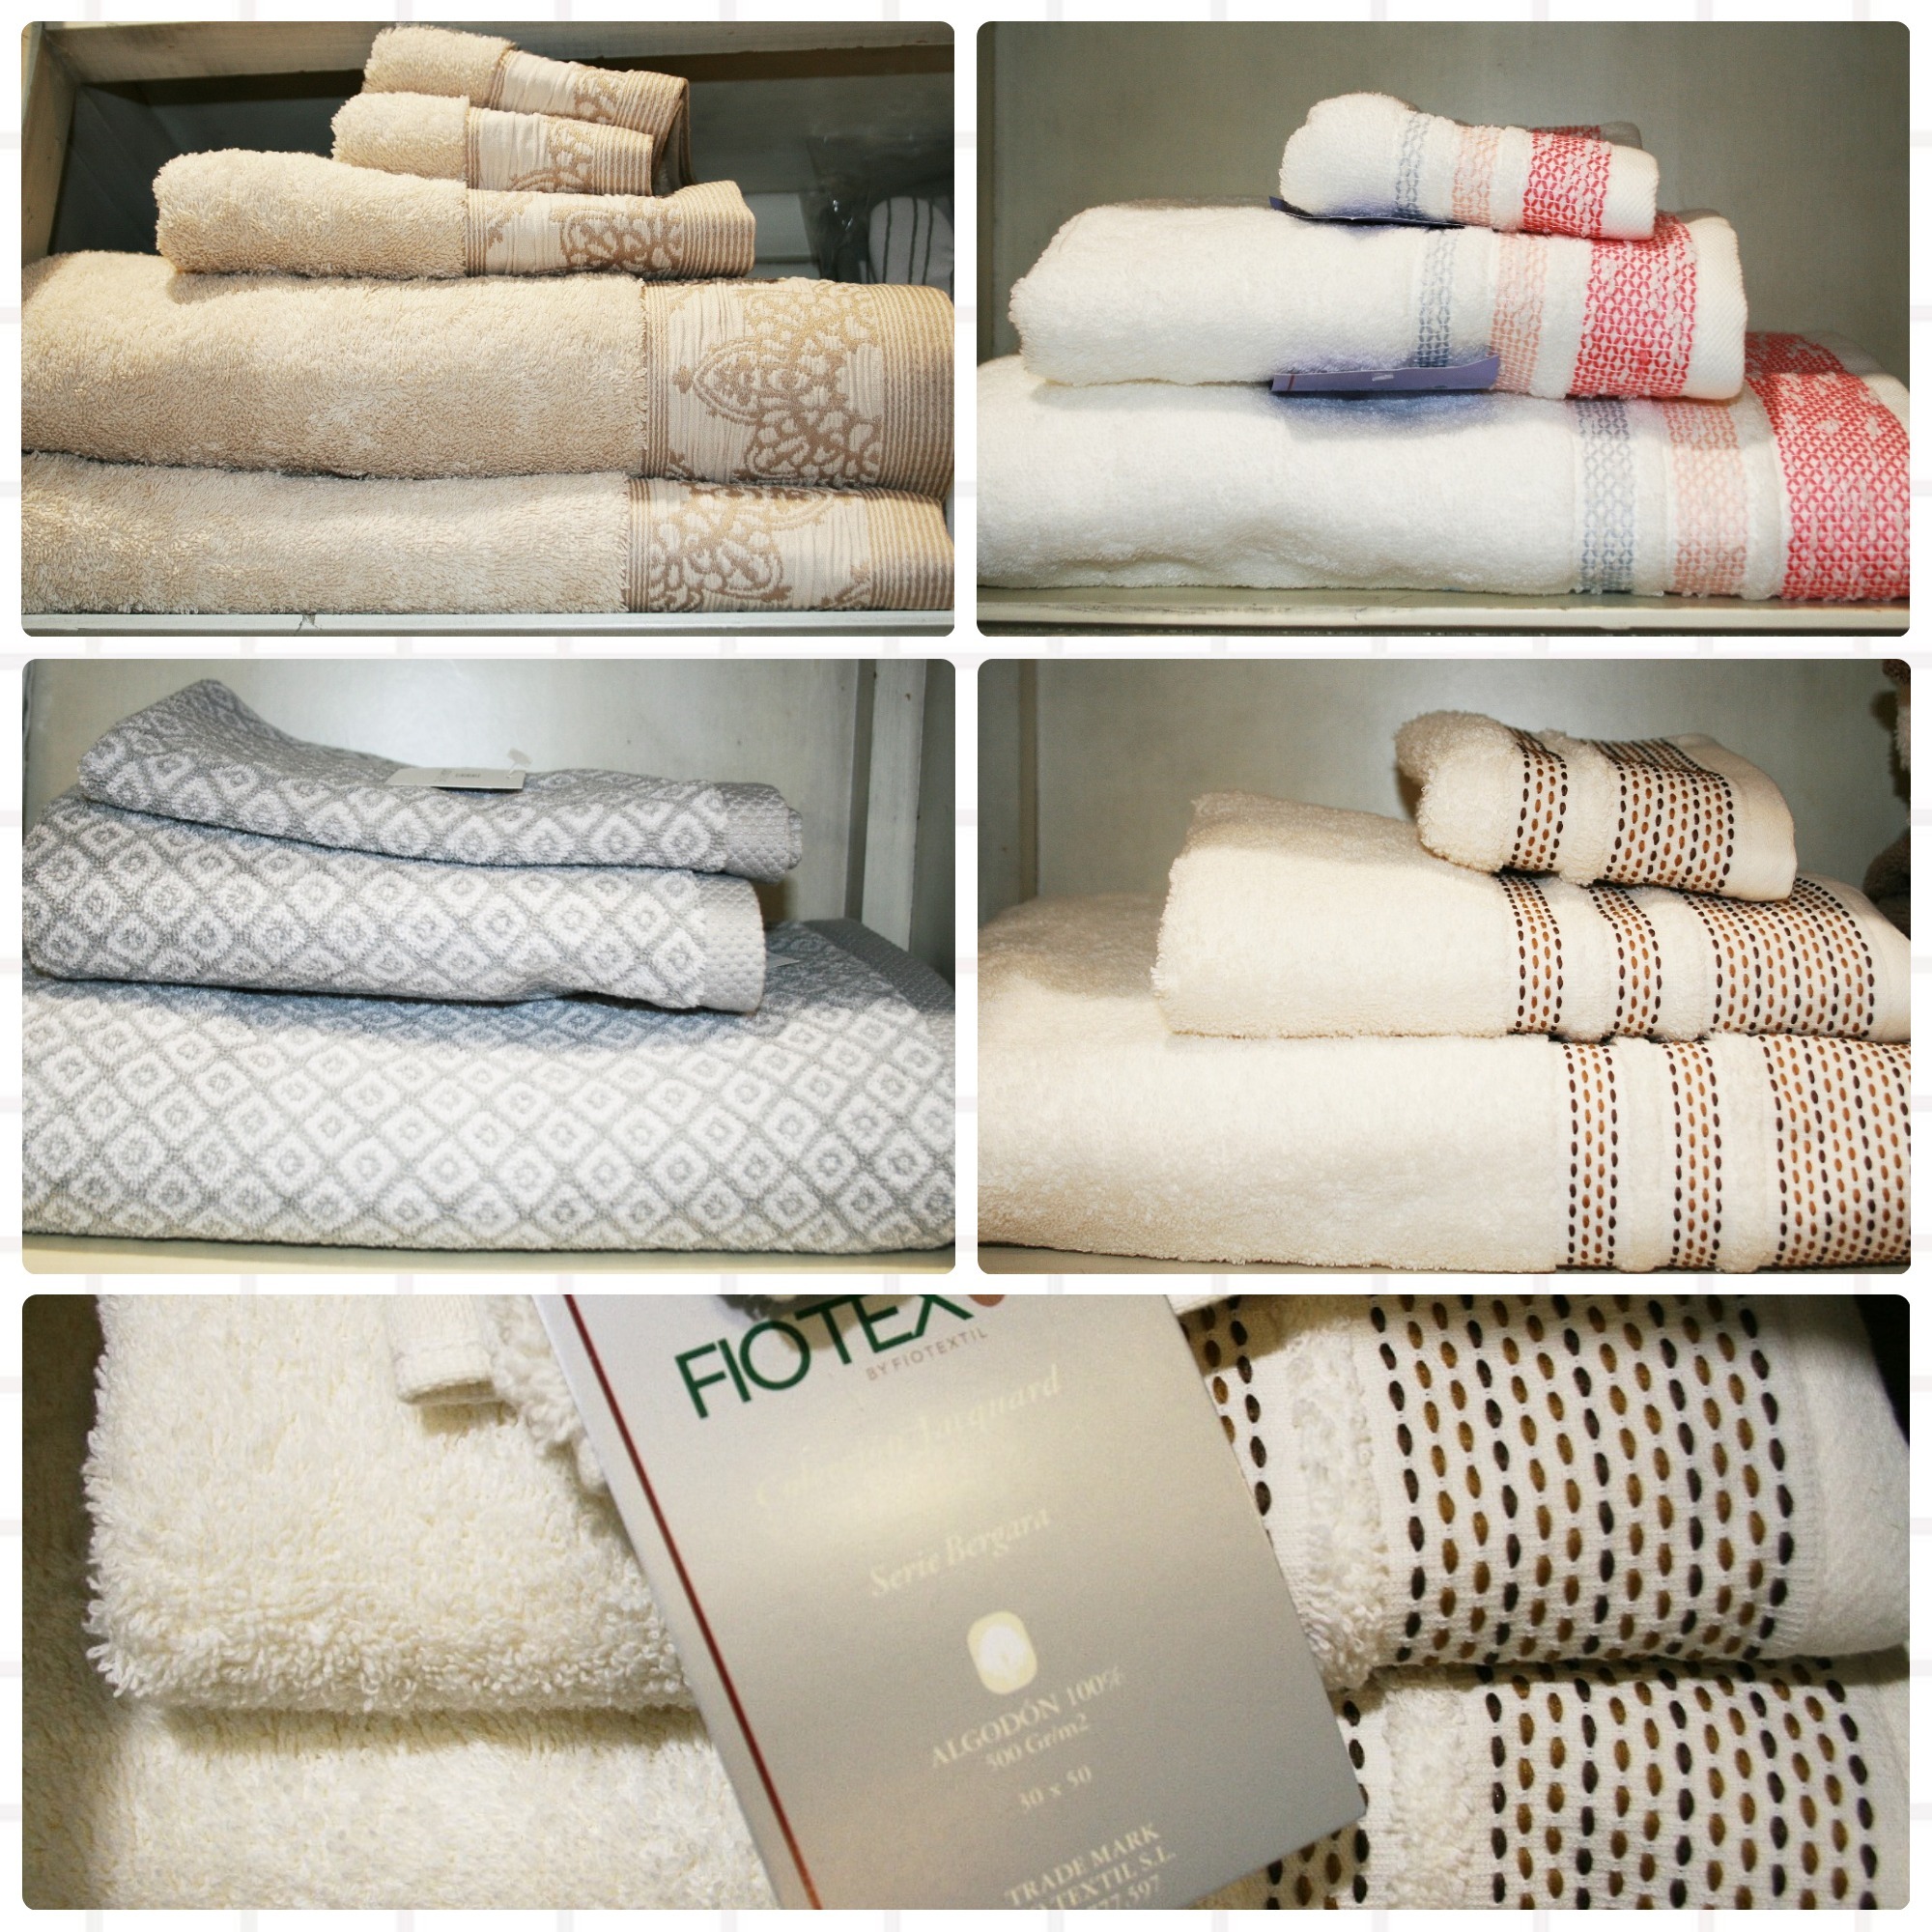 variedad de toallas de baño cazorla hogar córdoba